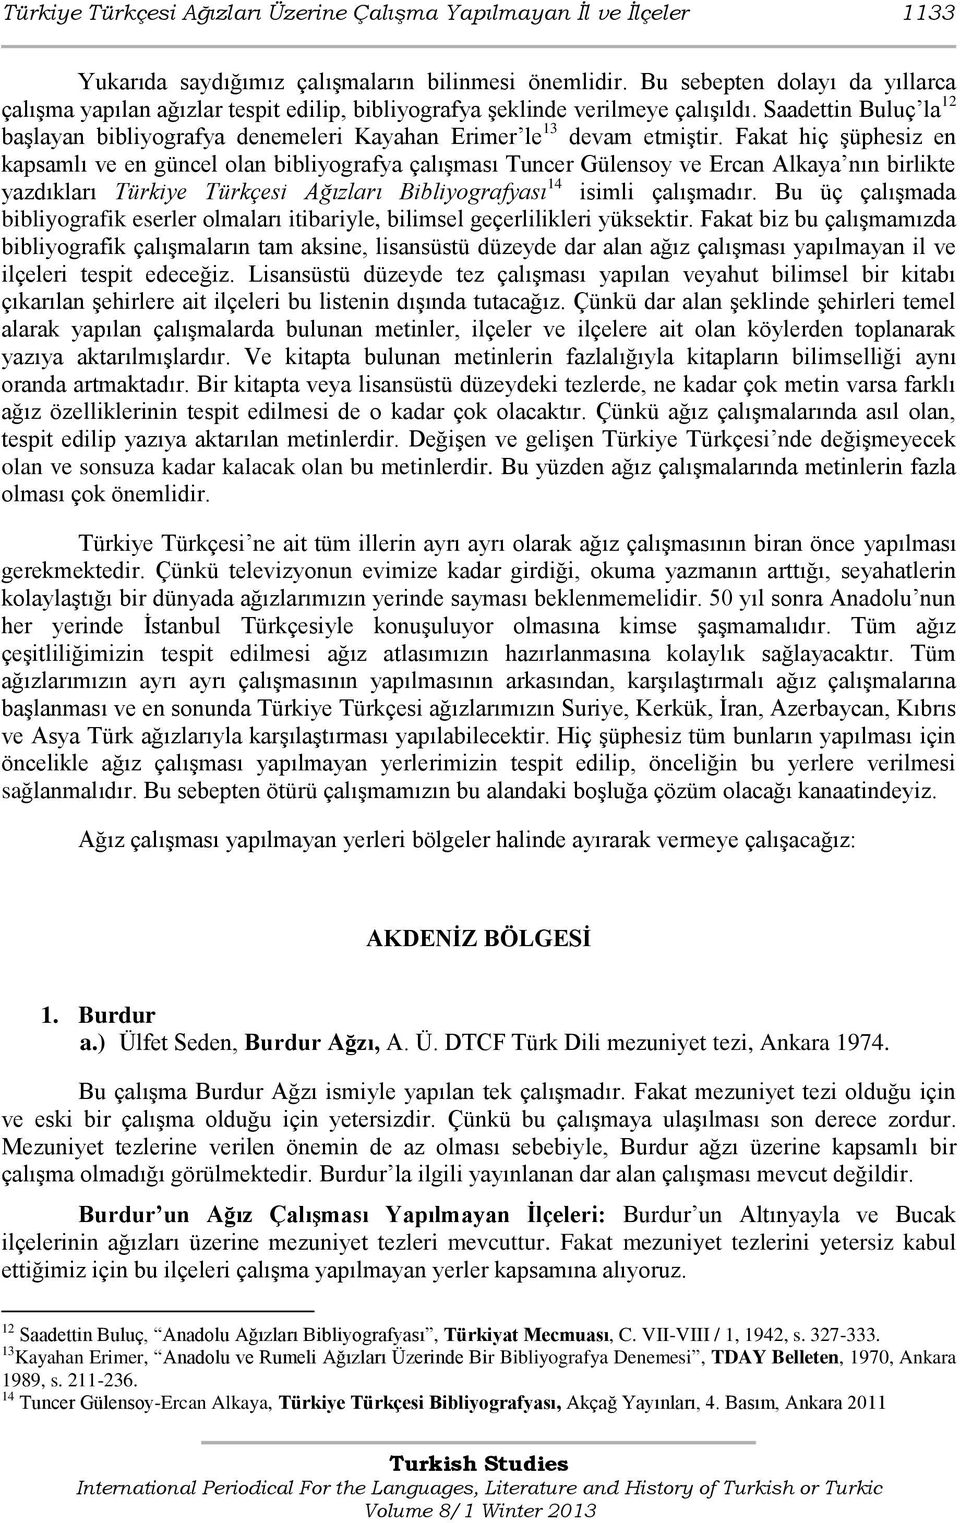 Saadettin Buluç la 12 başlayan bibliyografya denemeleri Kayahan Erimer le 13 devam etmiştir.